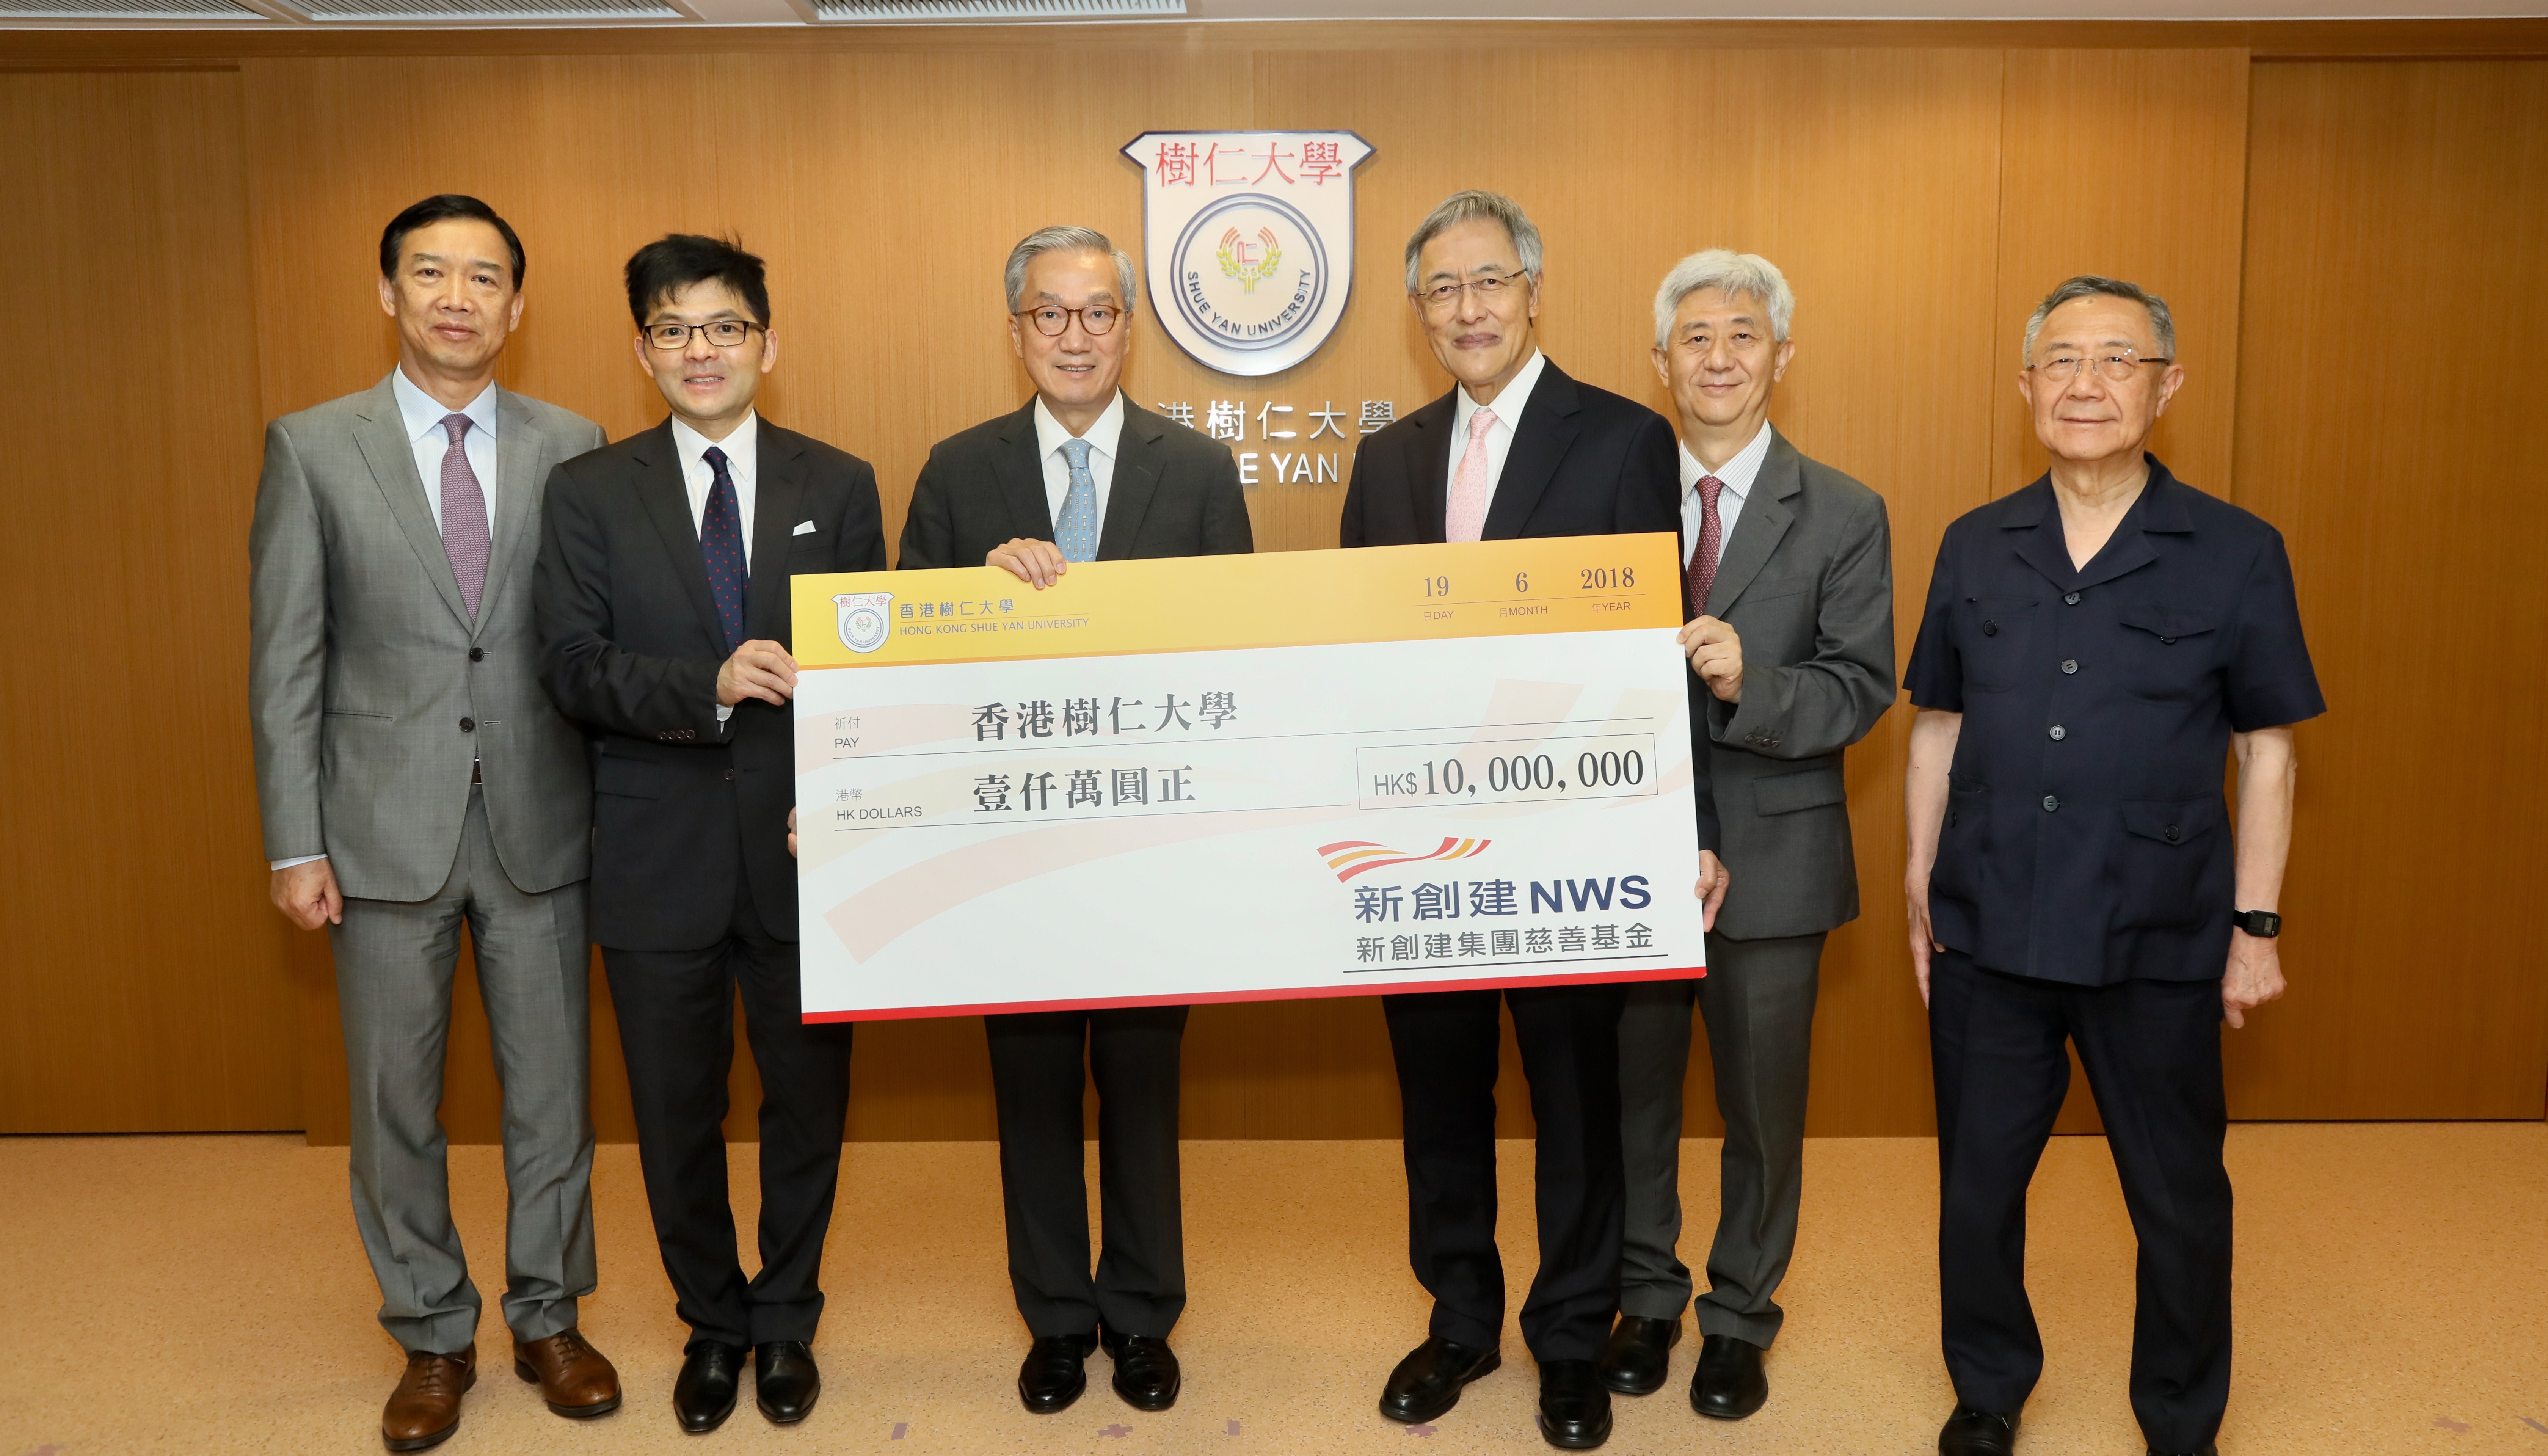 新創建集團慈善基金捐款一千萬港元予香港樹仁大學以提升教學設施